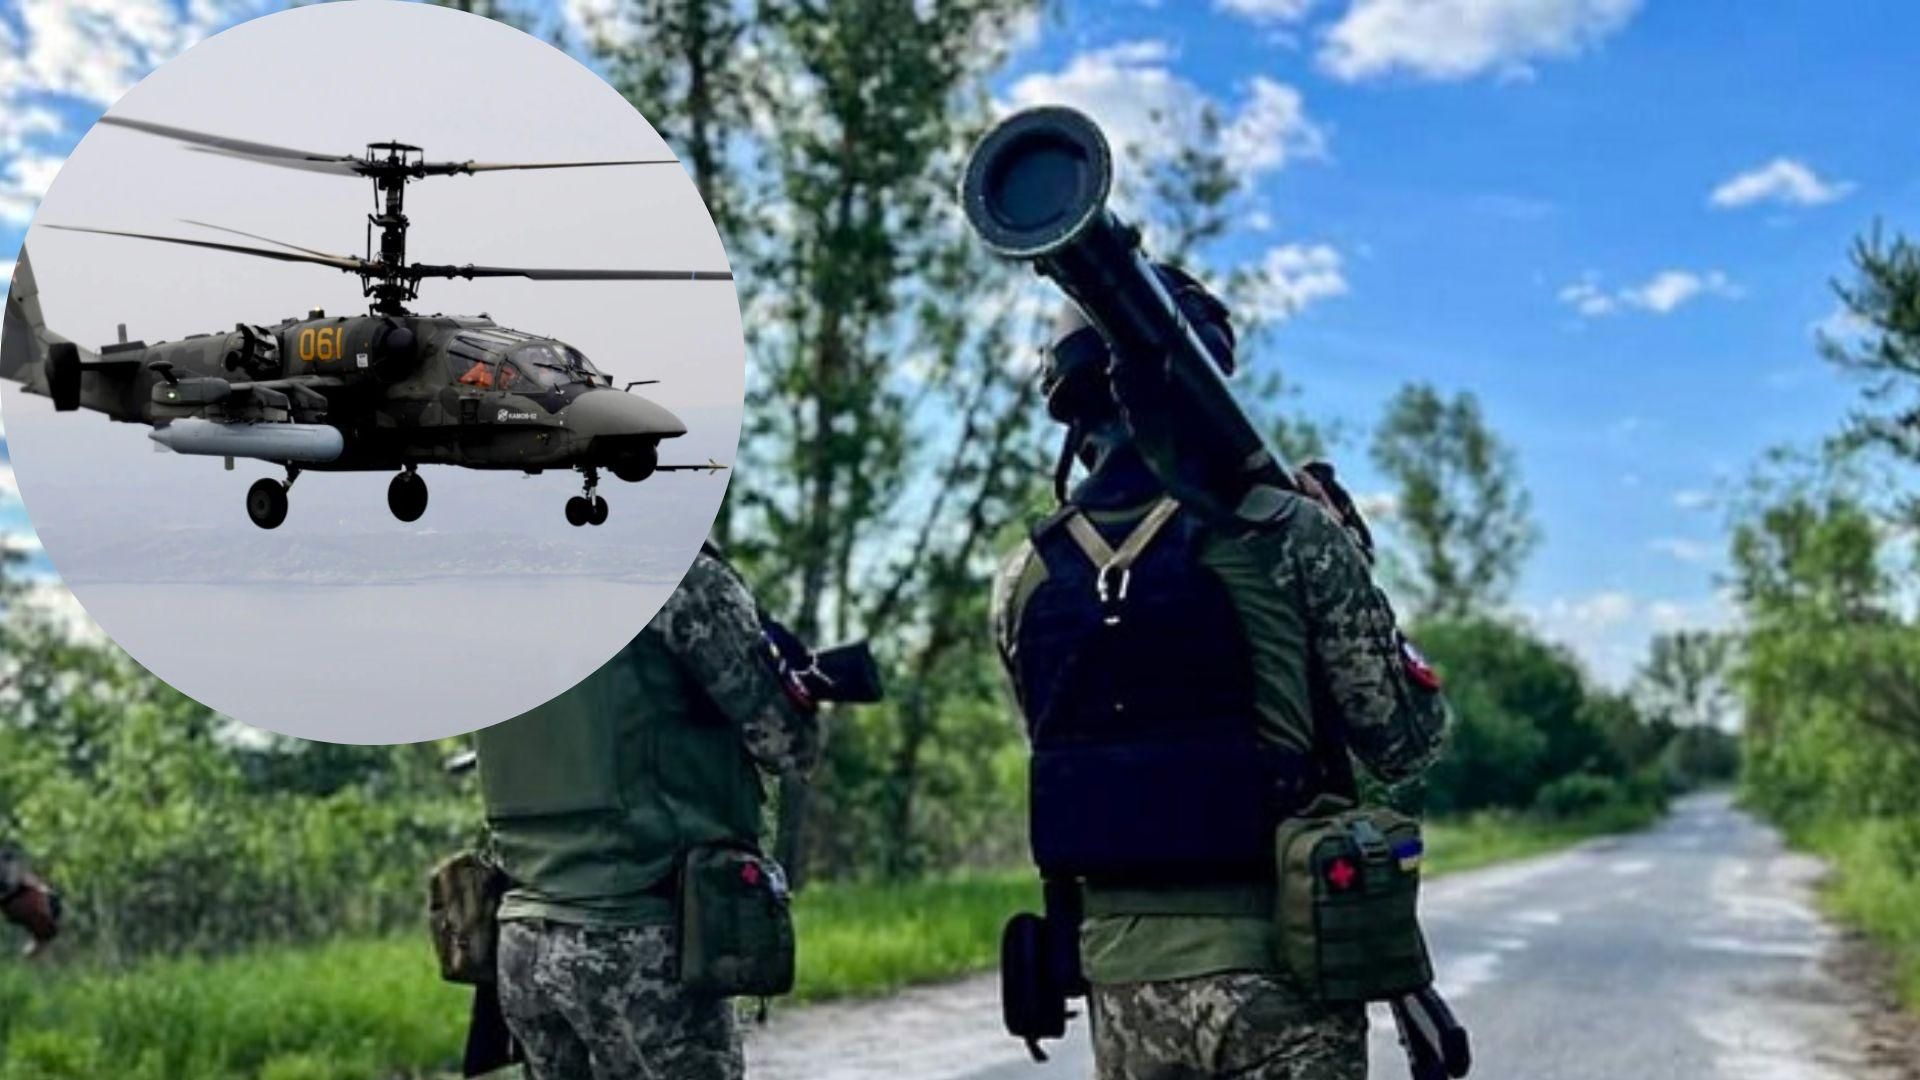 ВСУ сбили российский вертолет